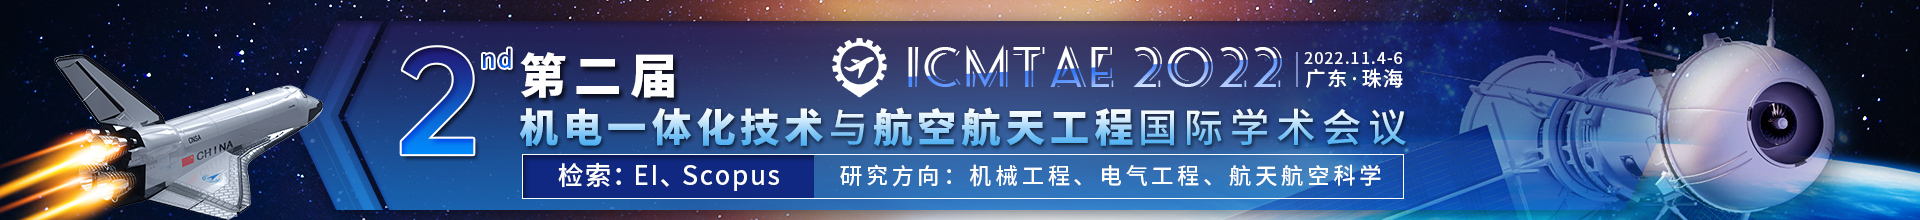 11月珠海-ICMTAE-学术会议云-尹旭舟20220426.jpg